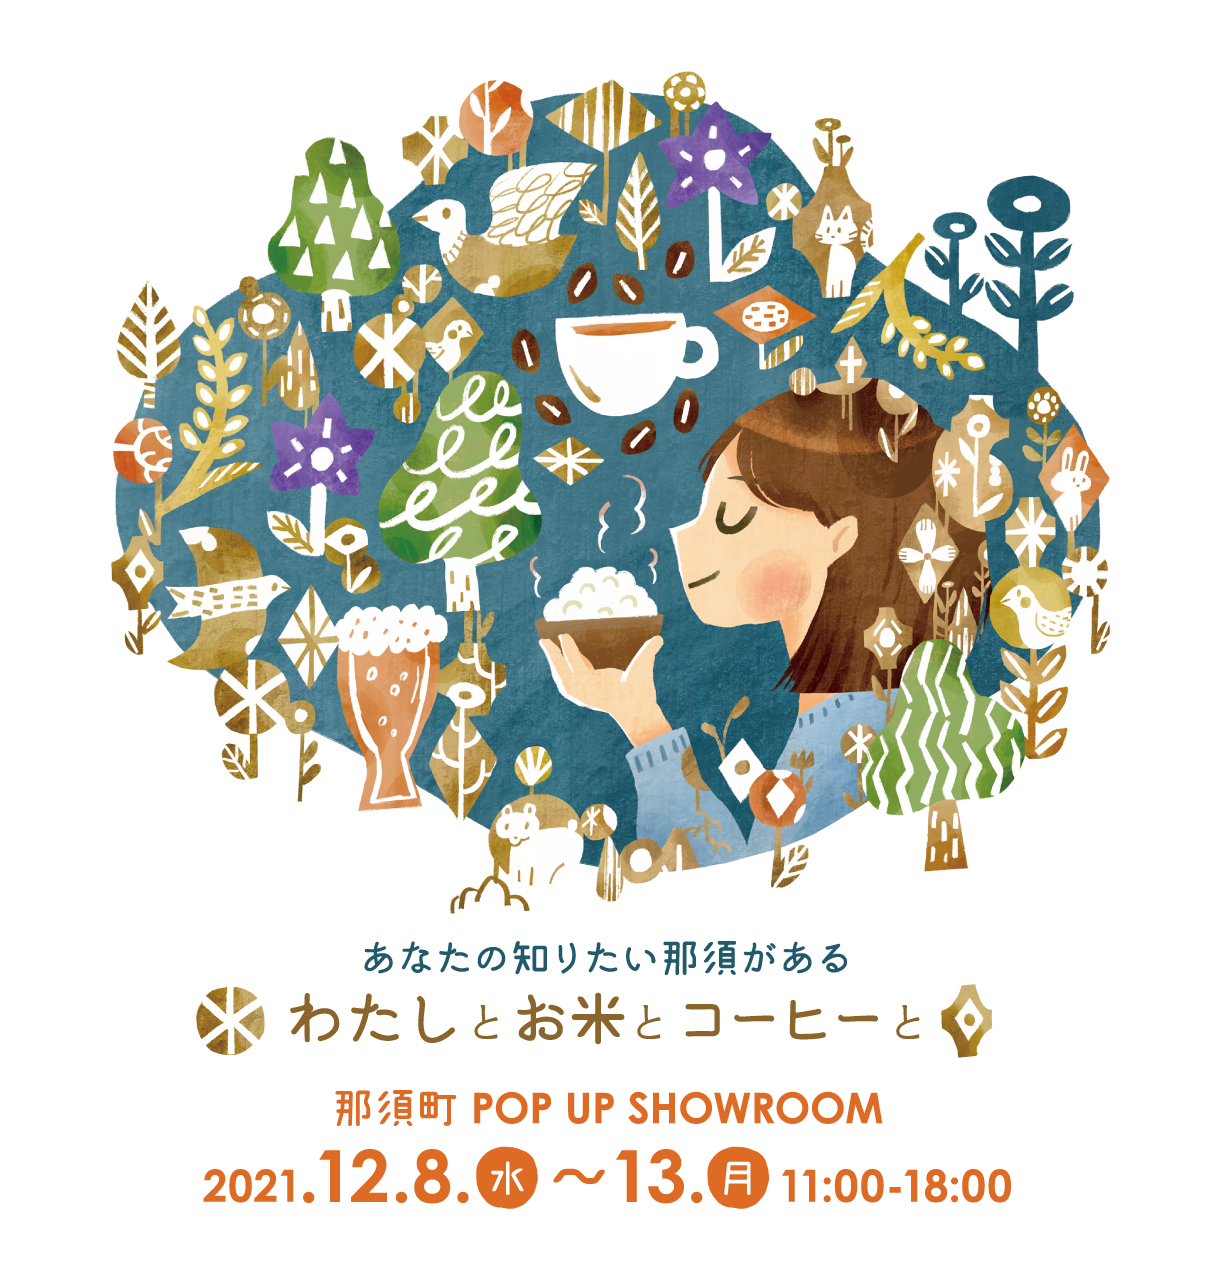 〈まだ知らない那須町の魅力を見つけよう！〉12月8日(水)より、栃木県那須町の新たな魅力を体感するポップアップショールーム『わたしとお米とコーヒーと』開催のサブ画像1